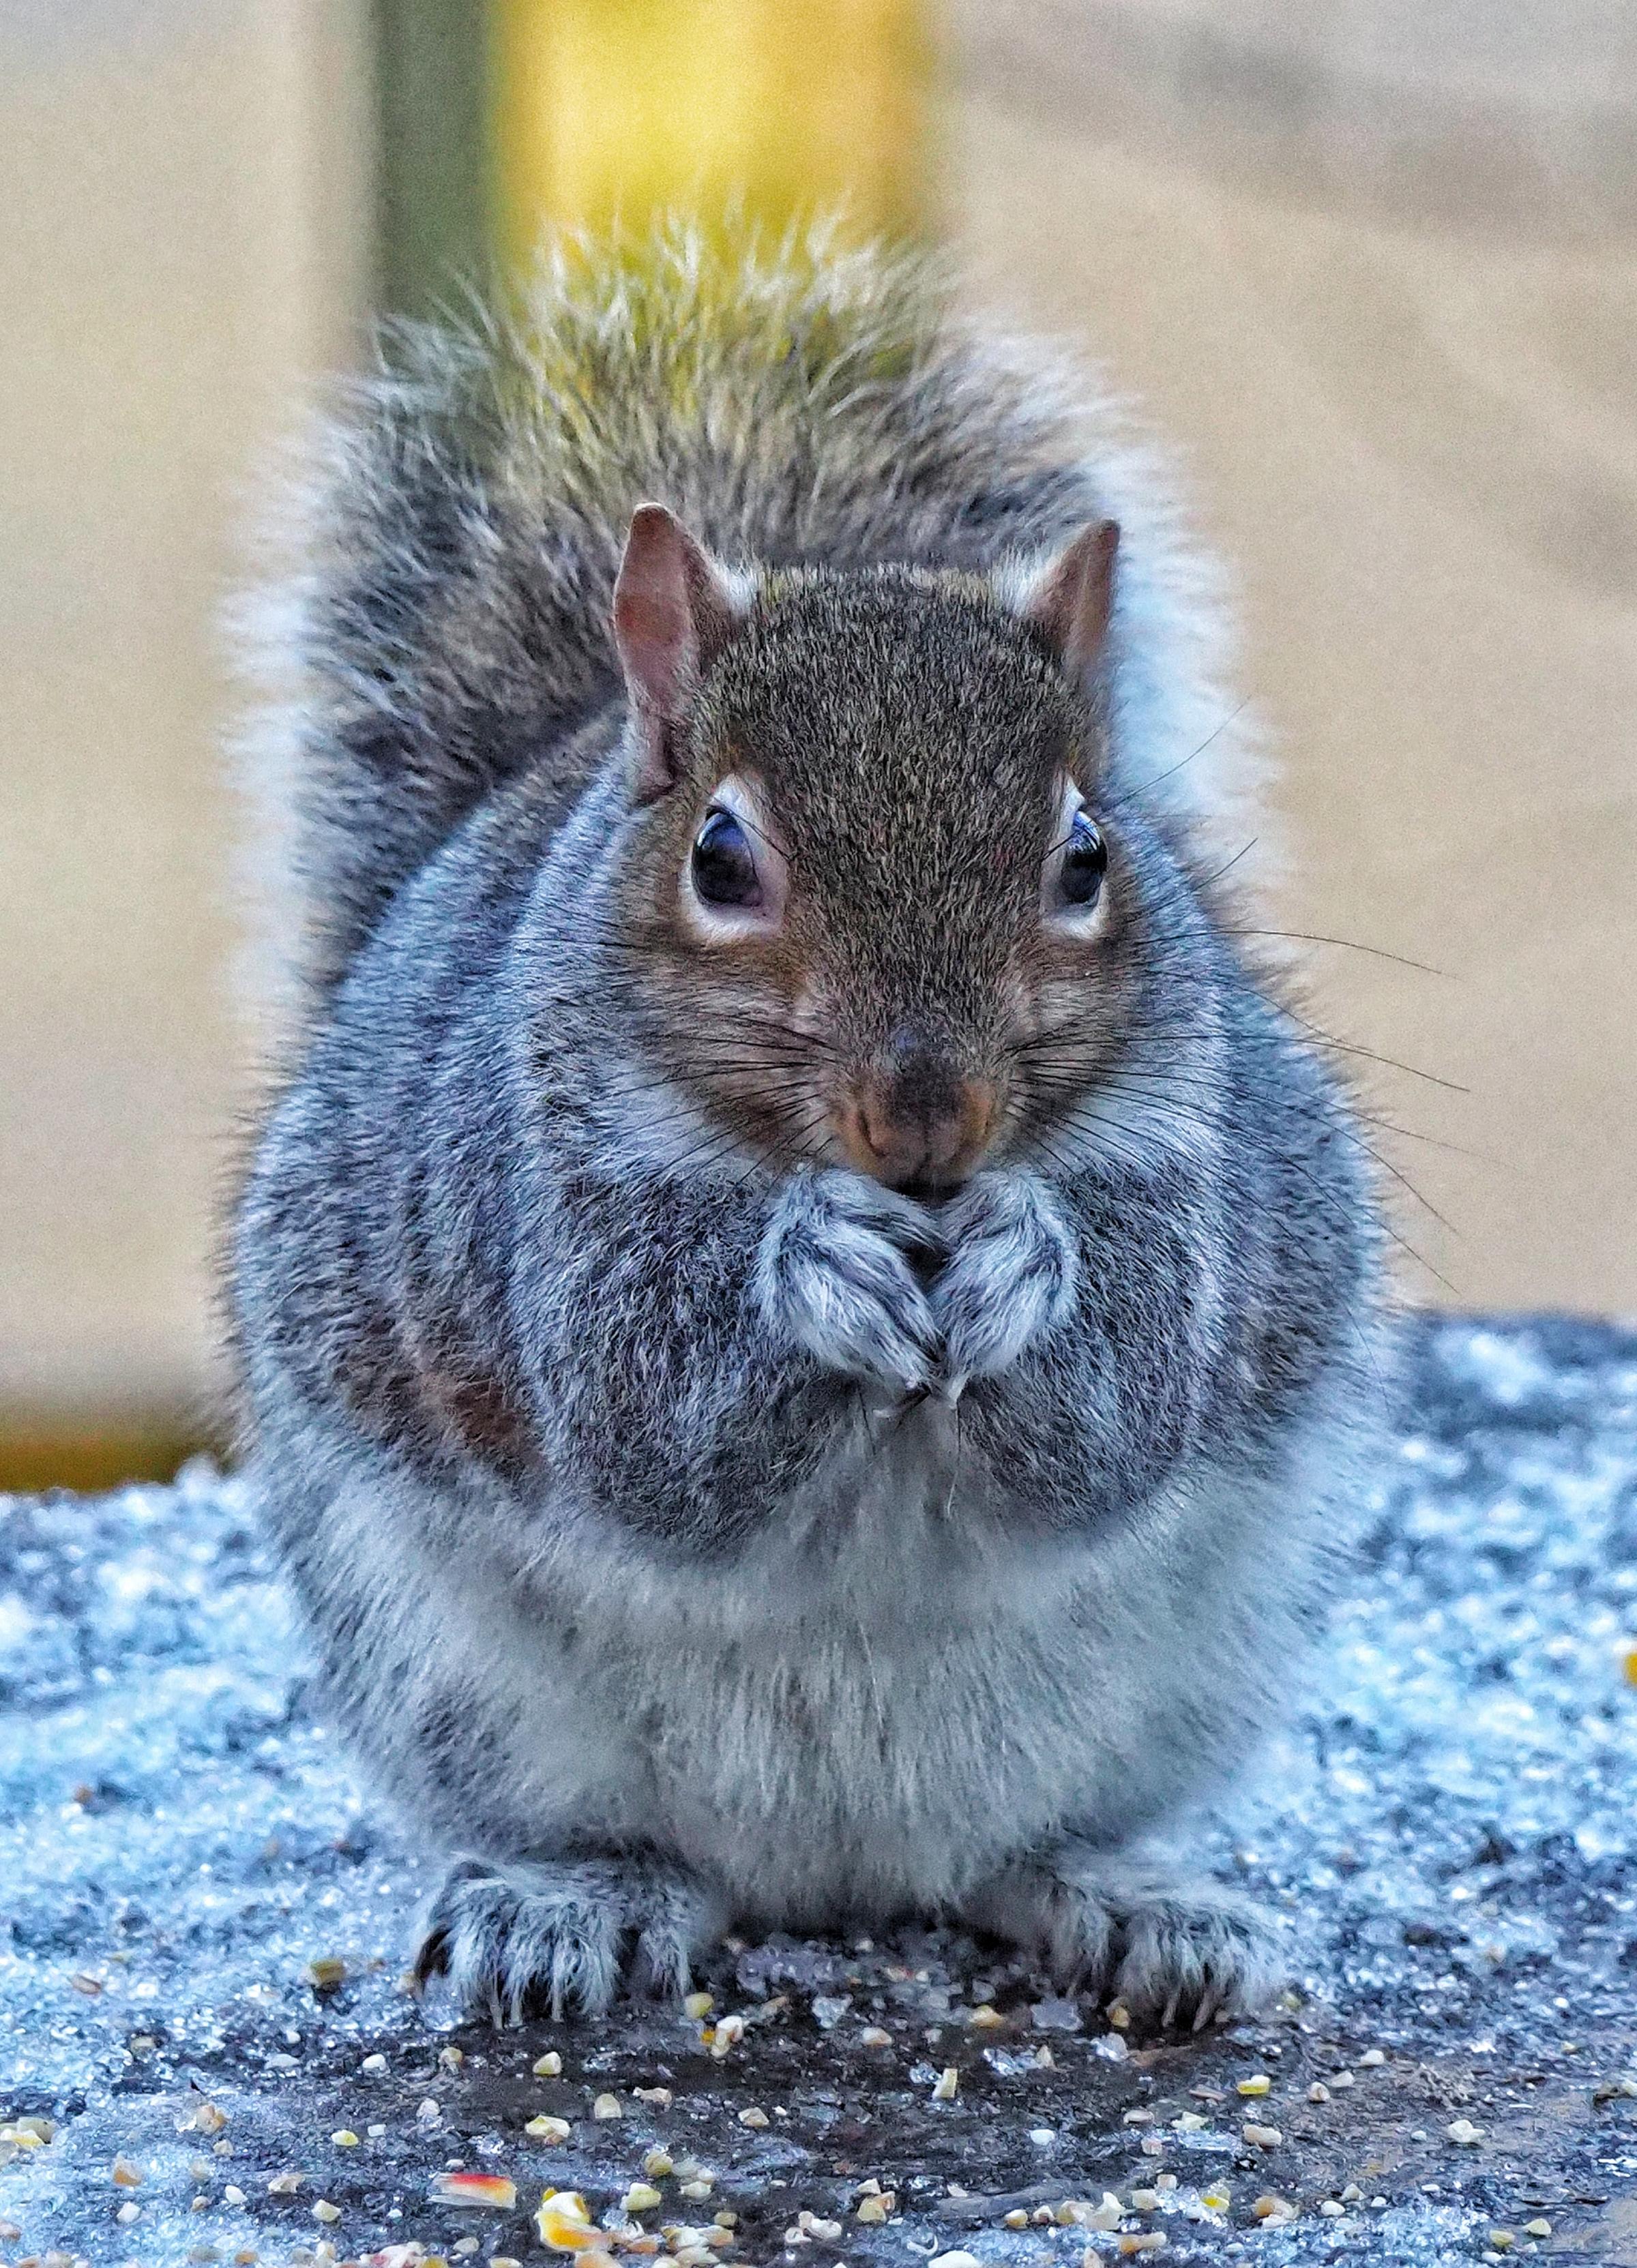 A squirrel at Lymm Dam